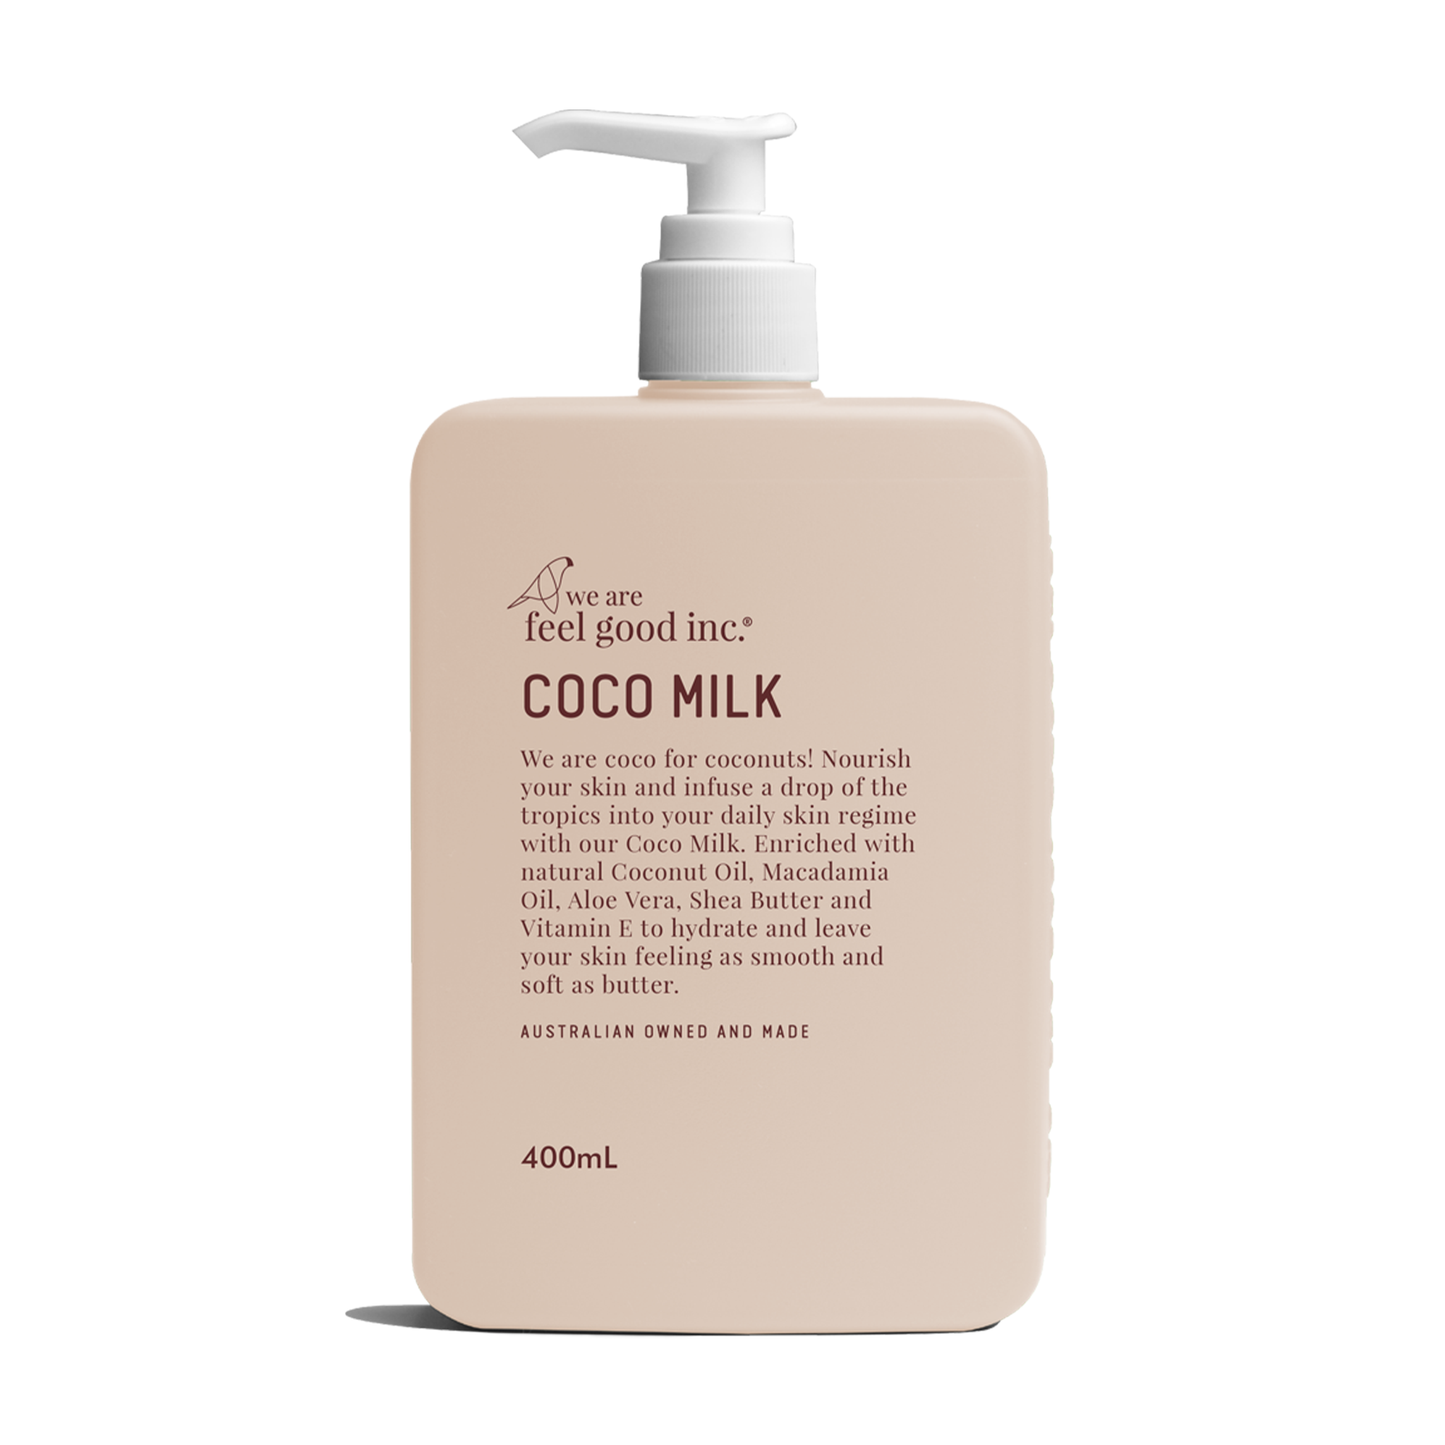 Coco Milk